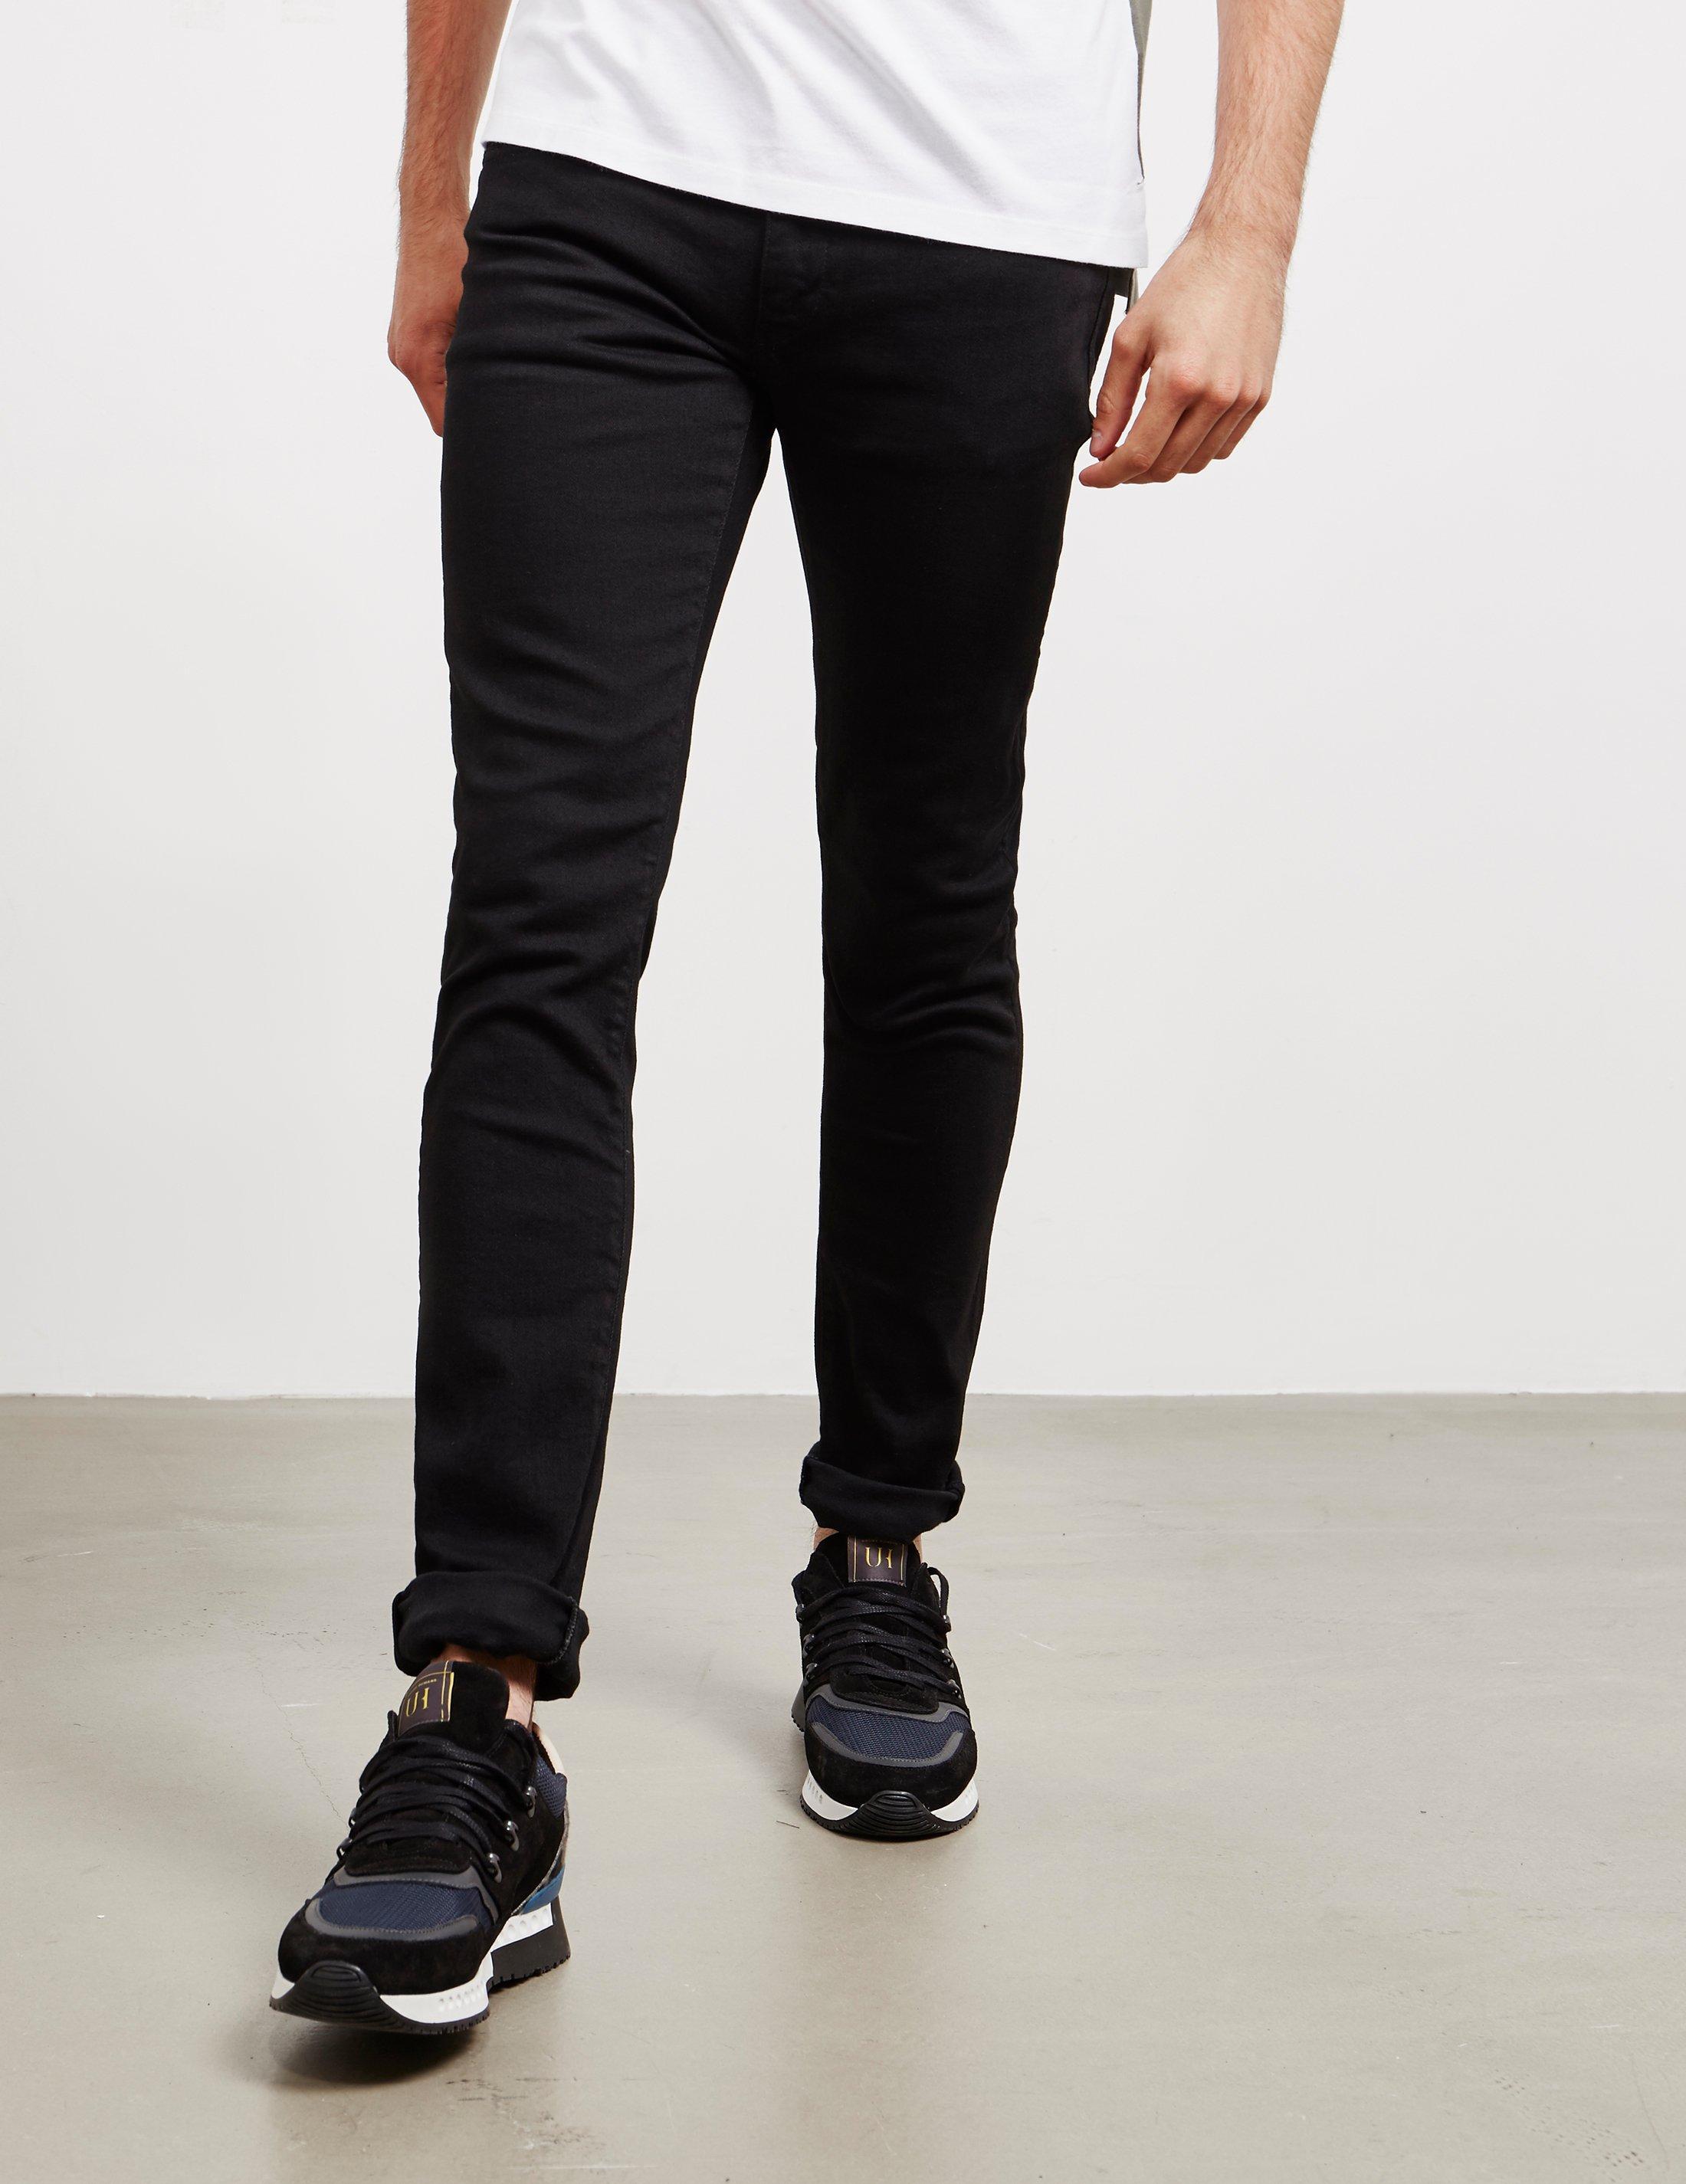 Emporio Armani Denim J10 Gold Skinny Jeans Black for Men - Lyst